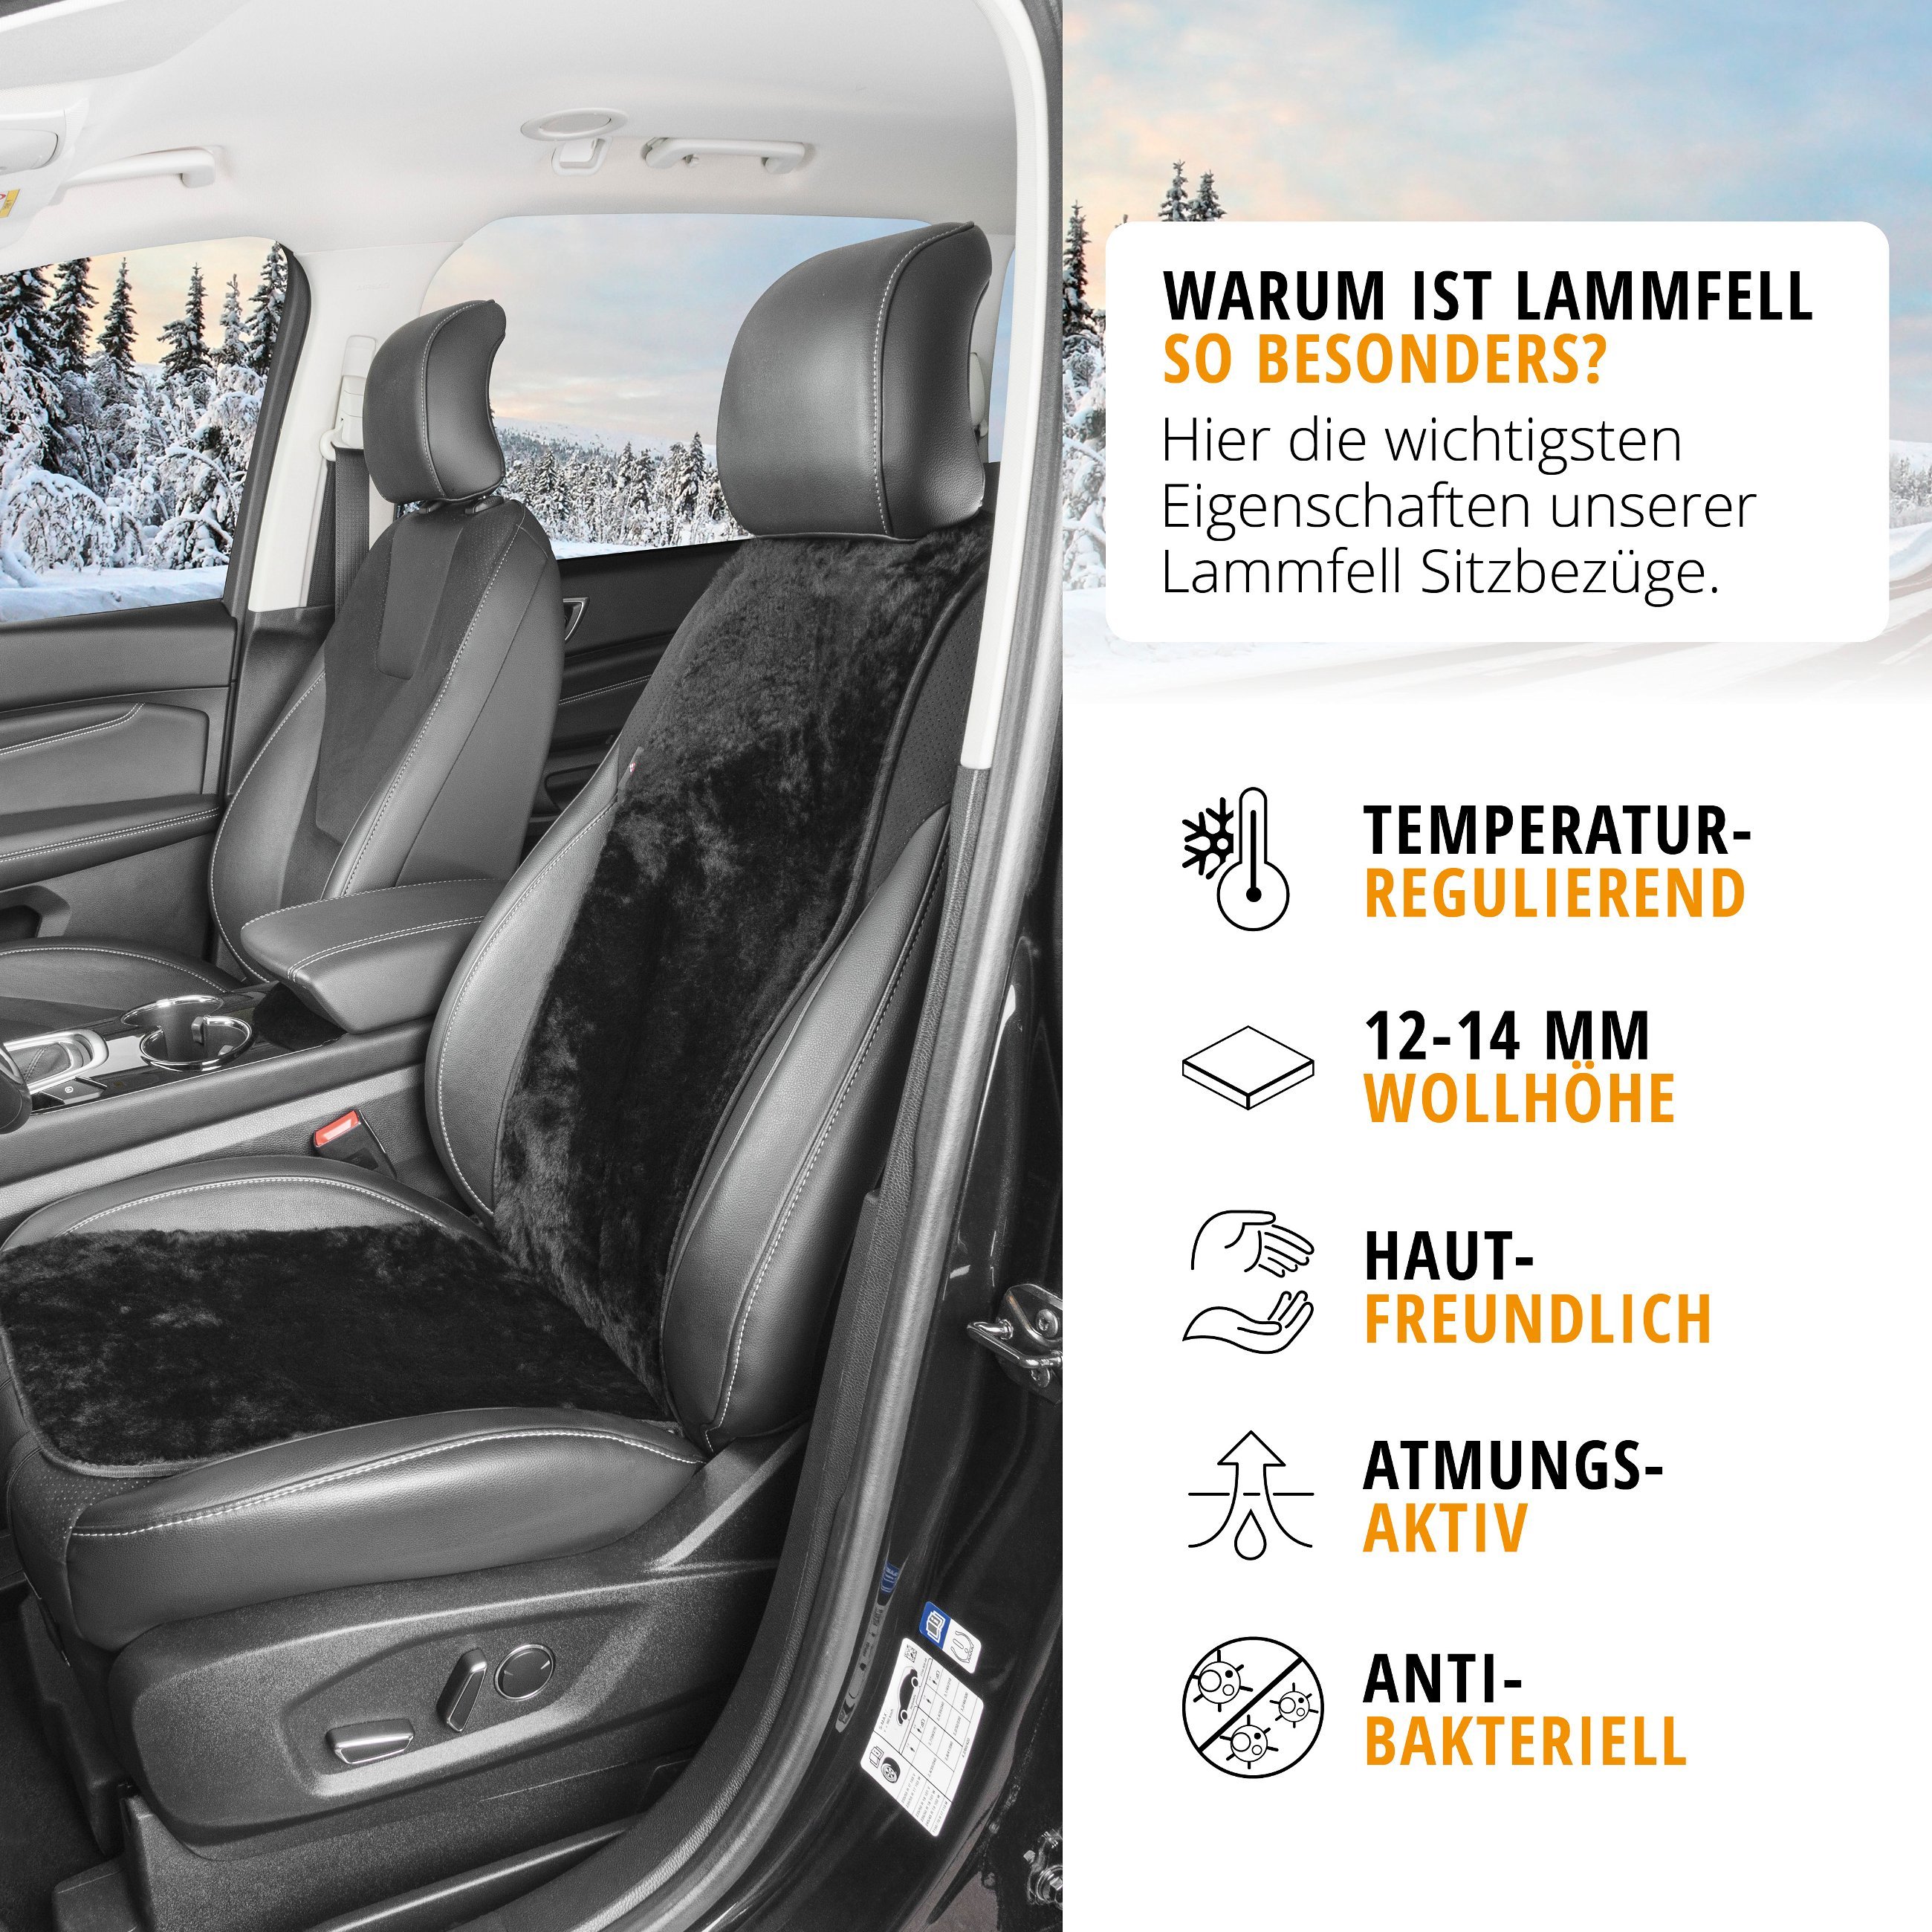 PKW Sitzauflage aus Lammfell Cosmo, Auto-Sitzaufleger, Lammfell-Sitzauflage schwarz